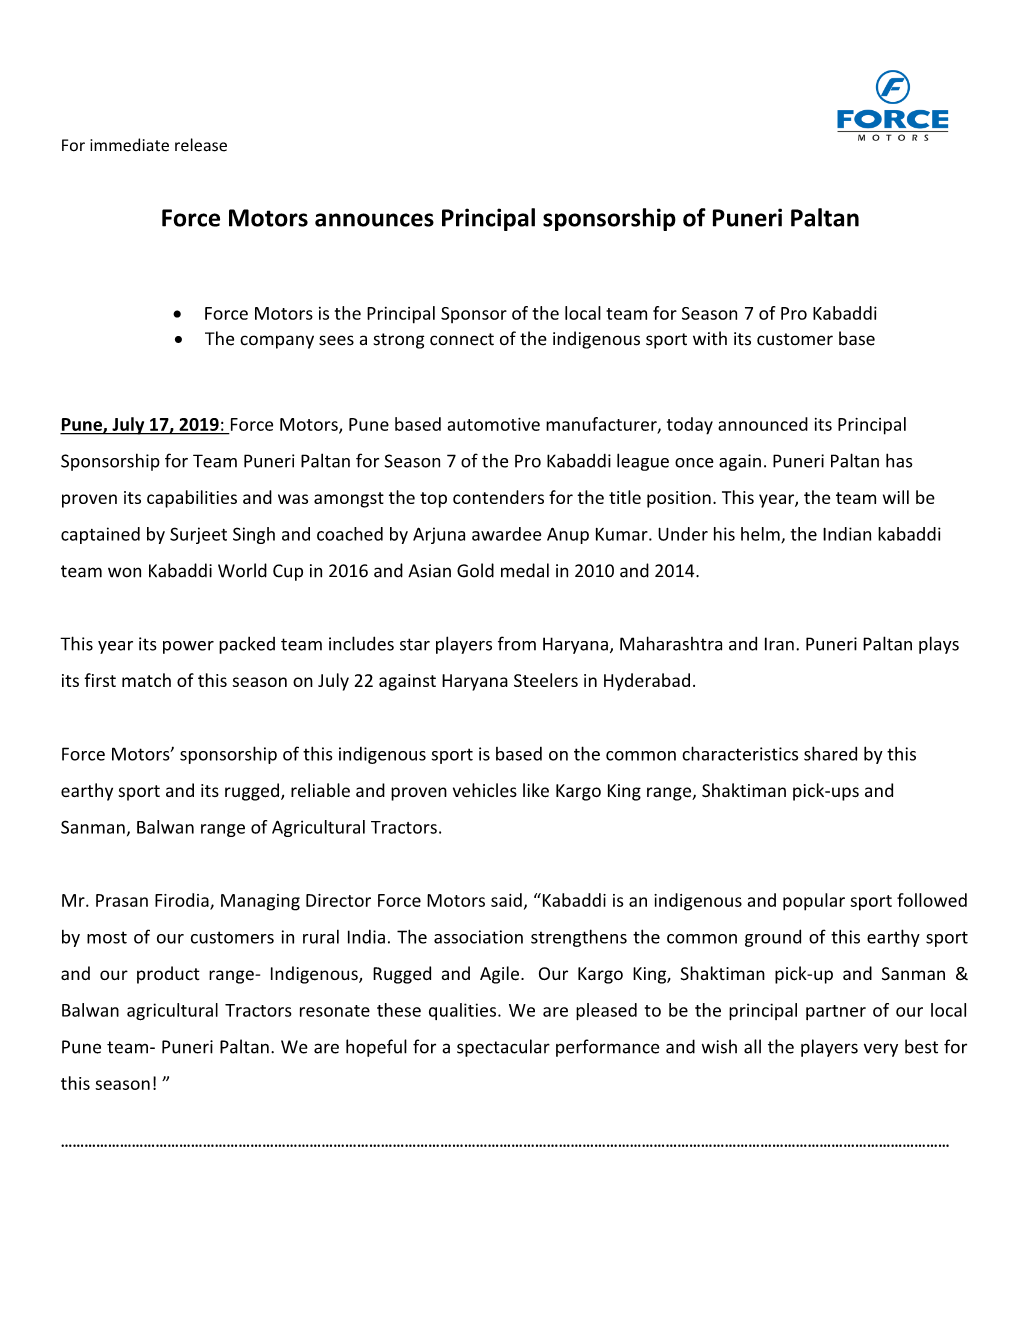 Force Motors Announces Principal Sponsorship of Puneri Paltan